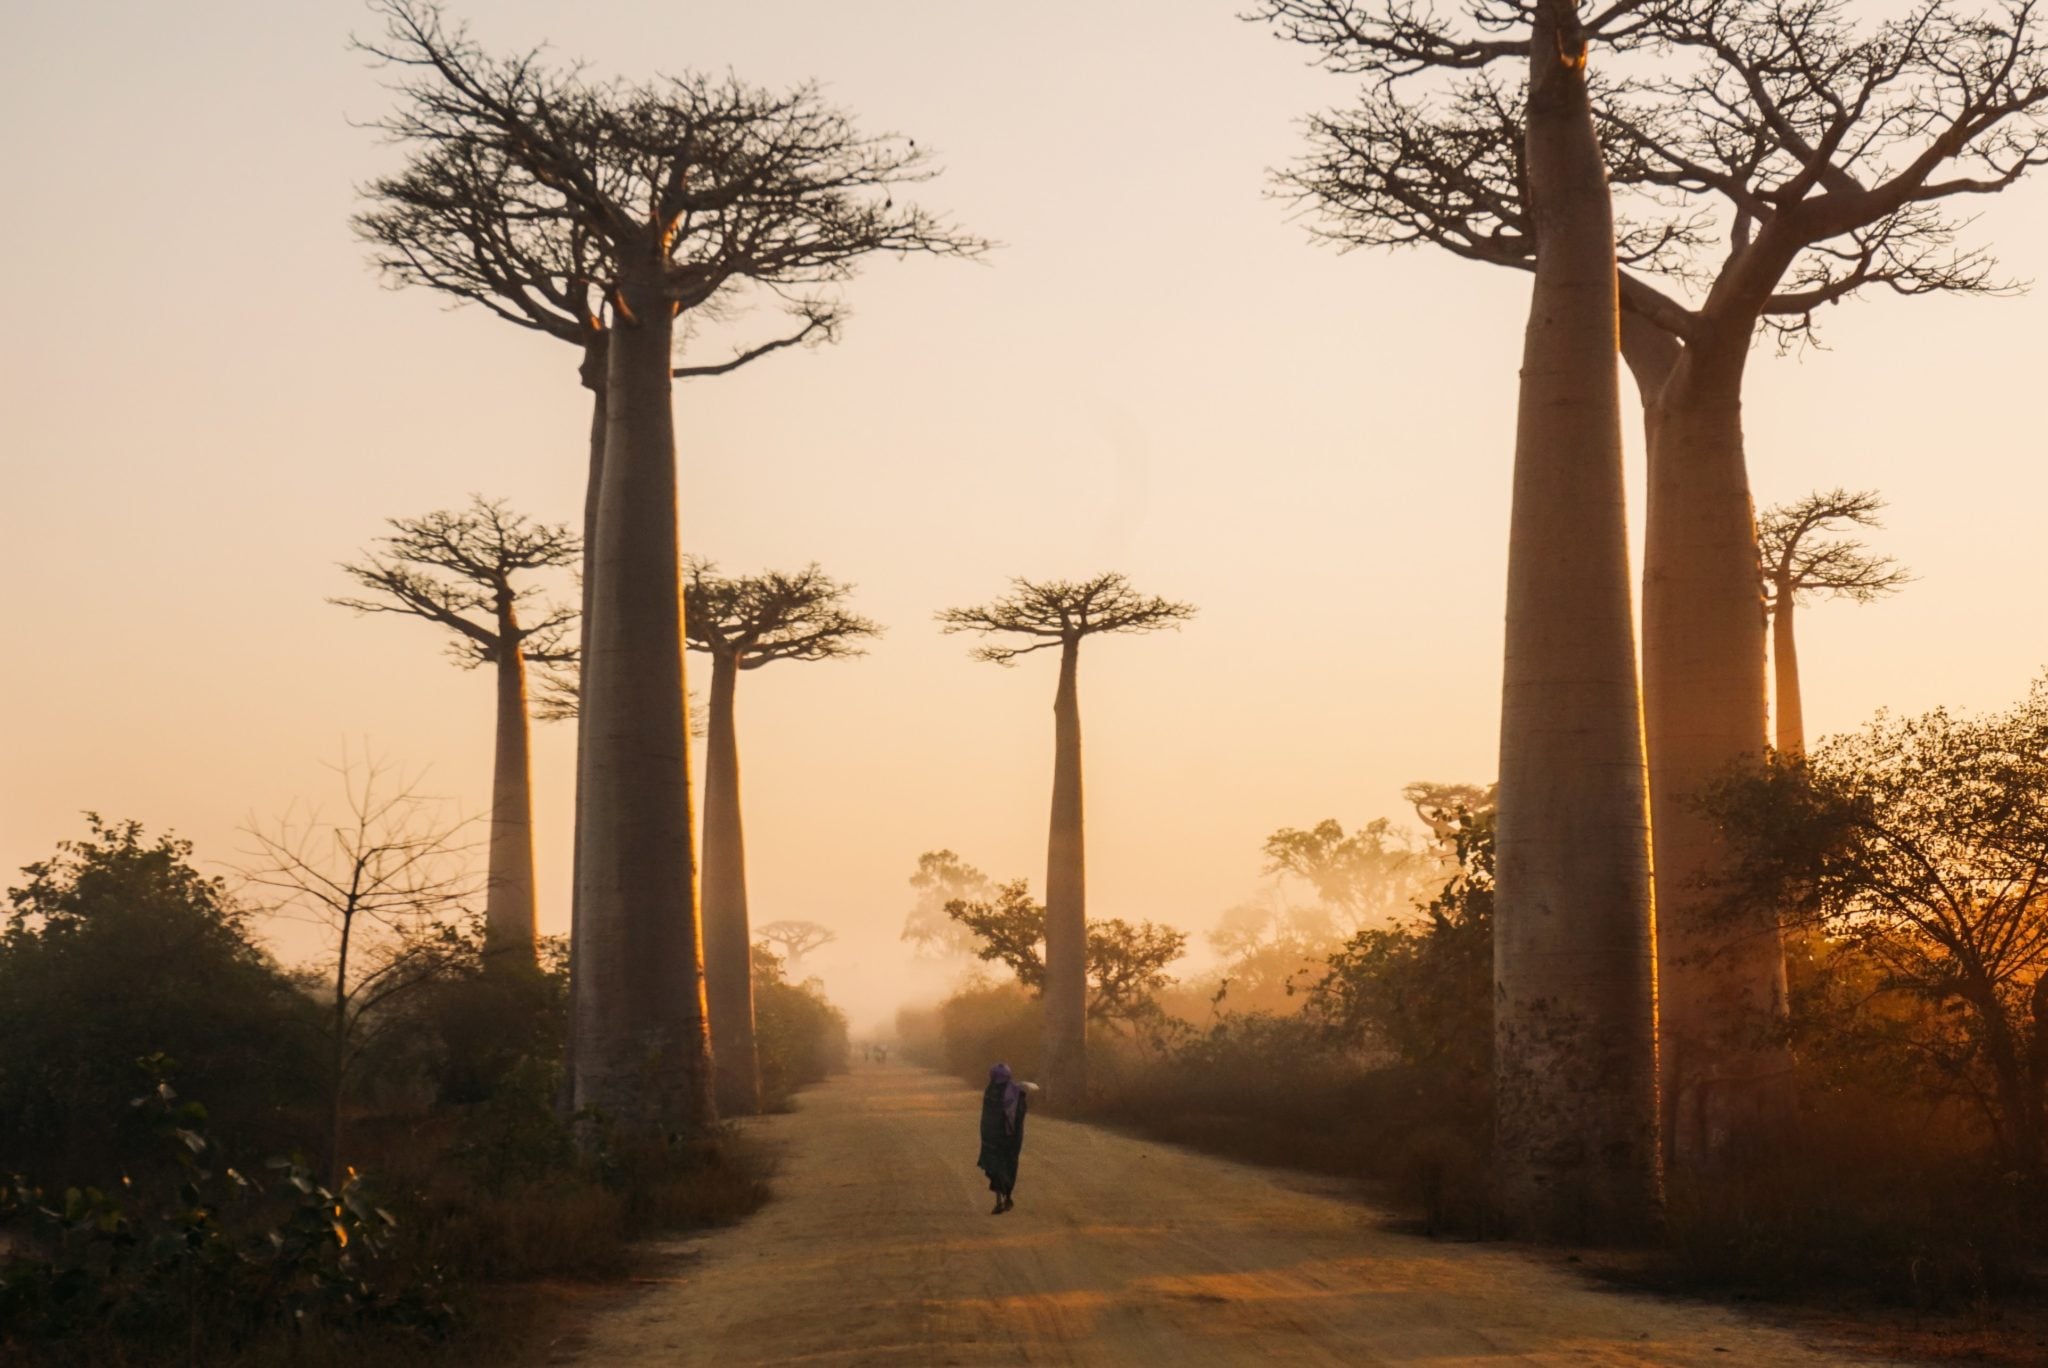 Aleja baobabów o wschodzie słońca, niebo nabierające pomarańczowo-czerwonego koloru, człowiek spacerujący wśród baobabów